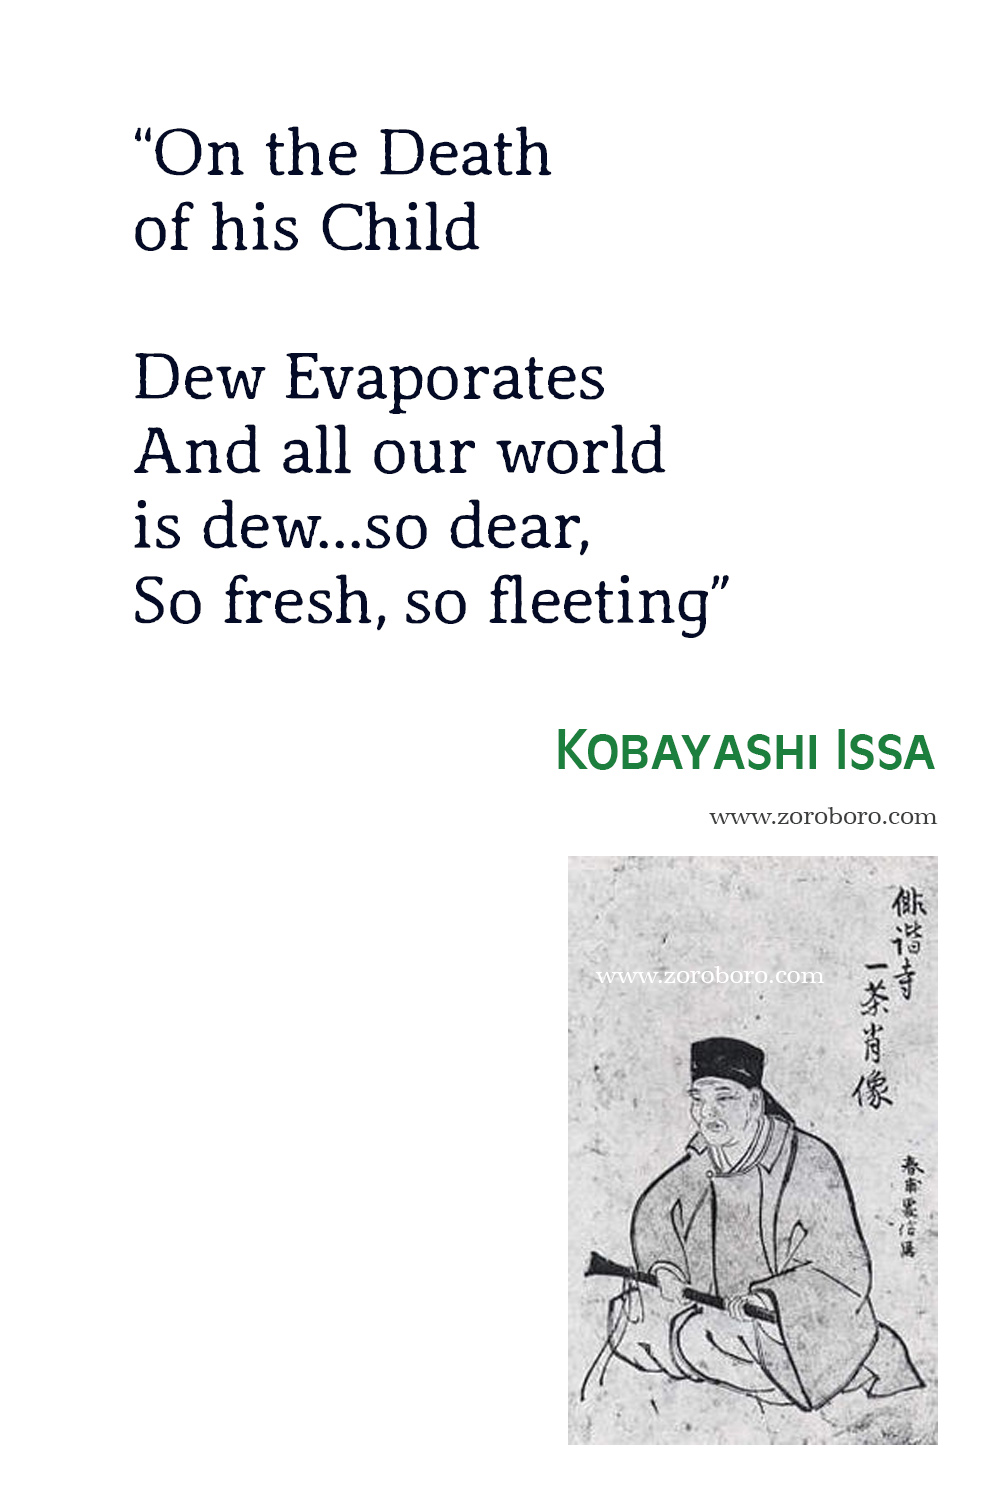 Kobayashi Issa Quotes. Kobayashi Issa Poems, Kobayashi Issa Poetry, Kobayashi Issa Books, Kobayashi Issa Famous haiku, Kobayashi Issa Haiku Poems